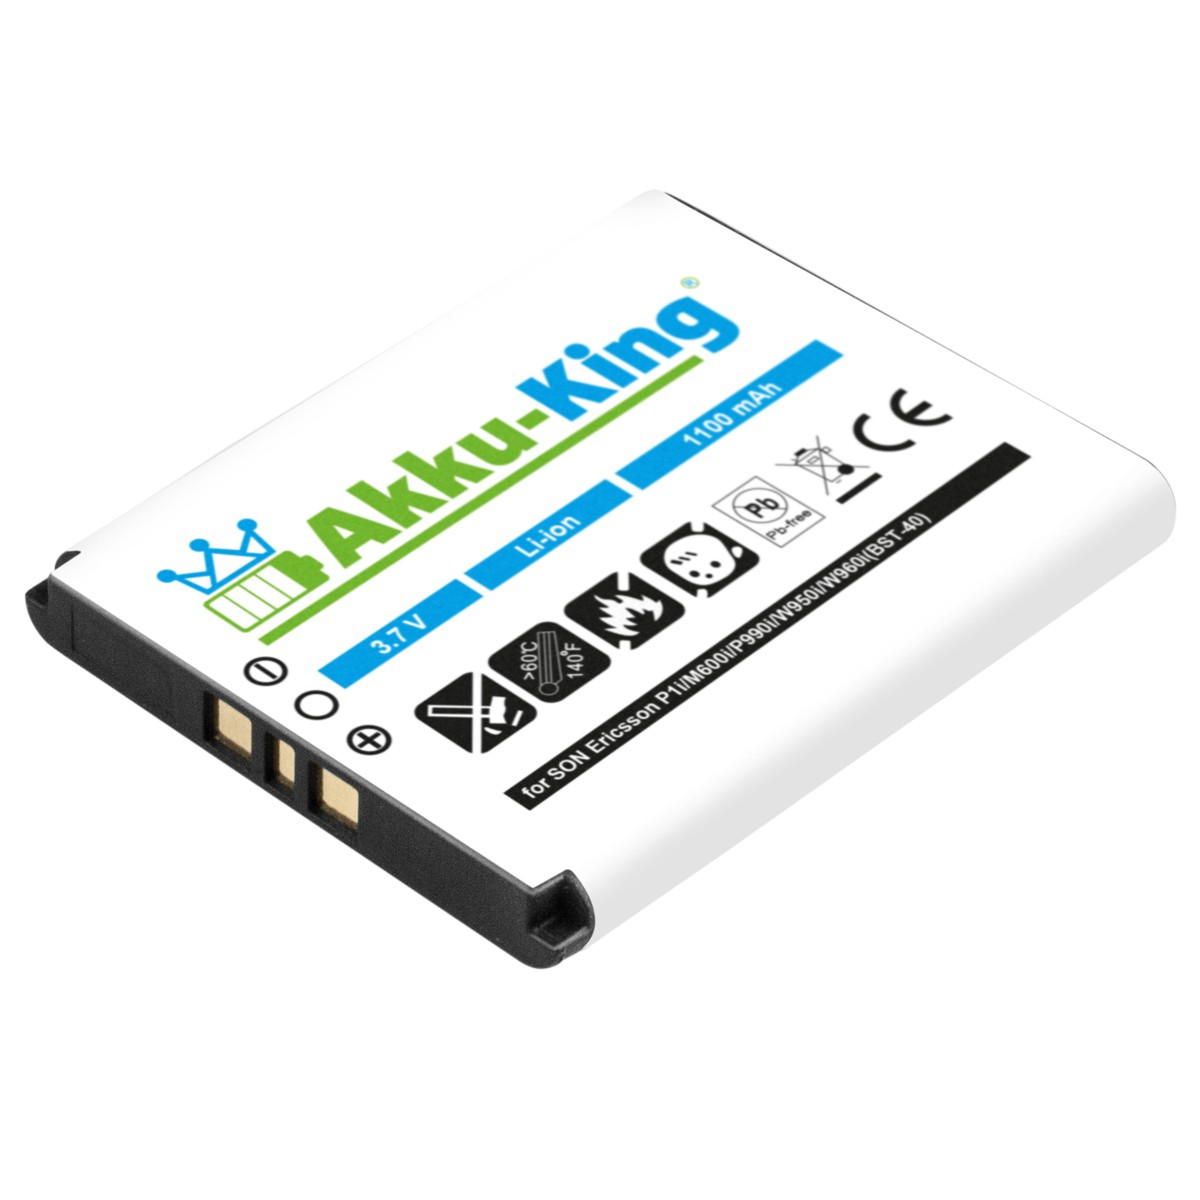 AKKU-KING Akku kompatibel mit Li-Ion 3.7 BST-40 Volt, 1100mAh Handy-Akku, Sony-Ericsson